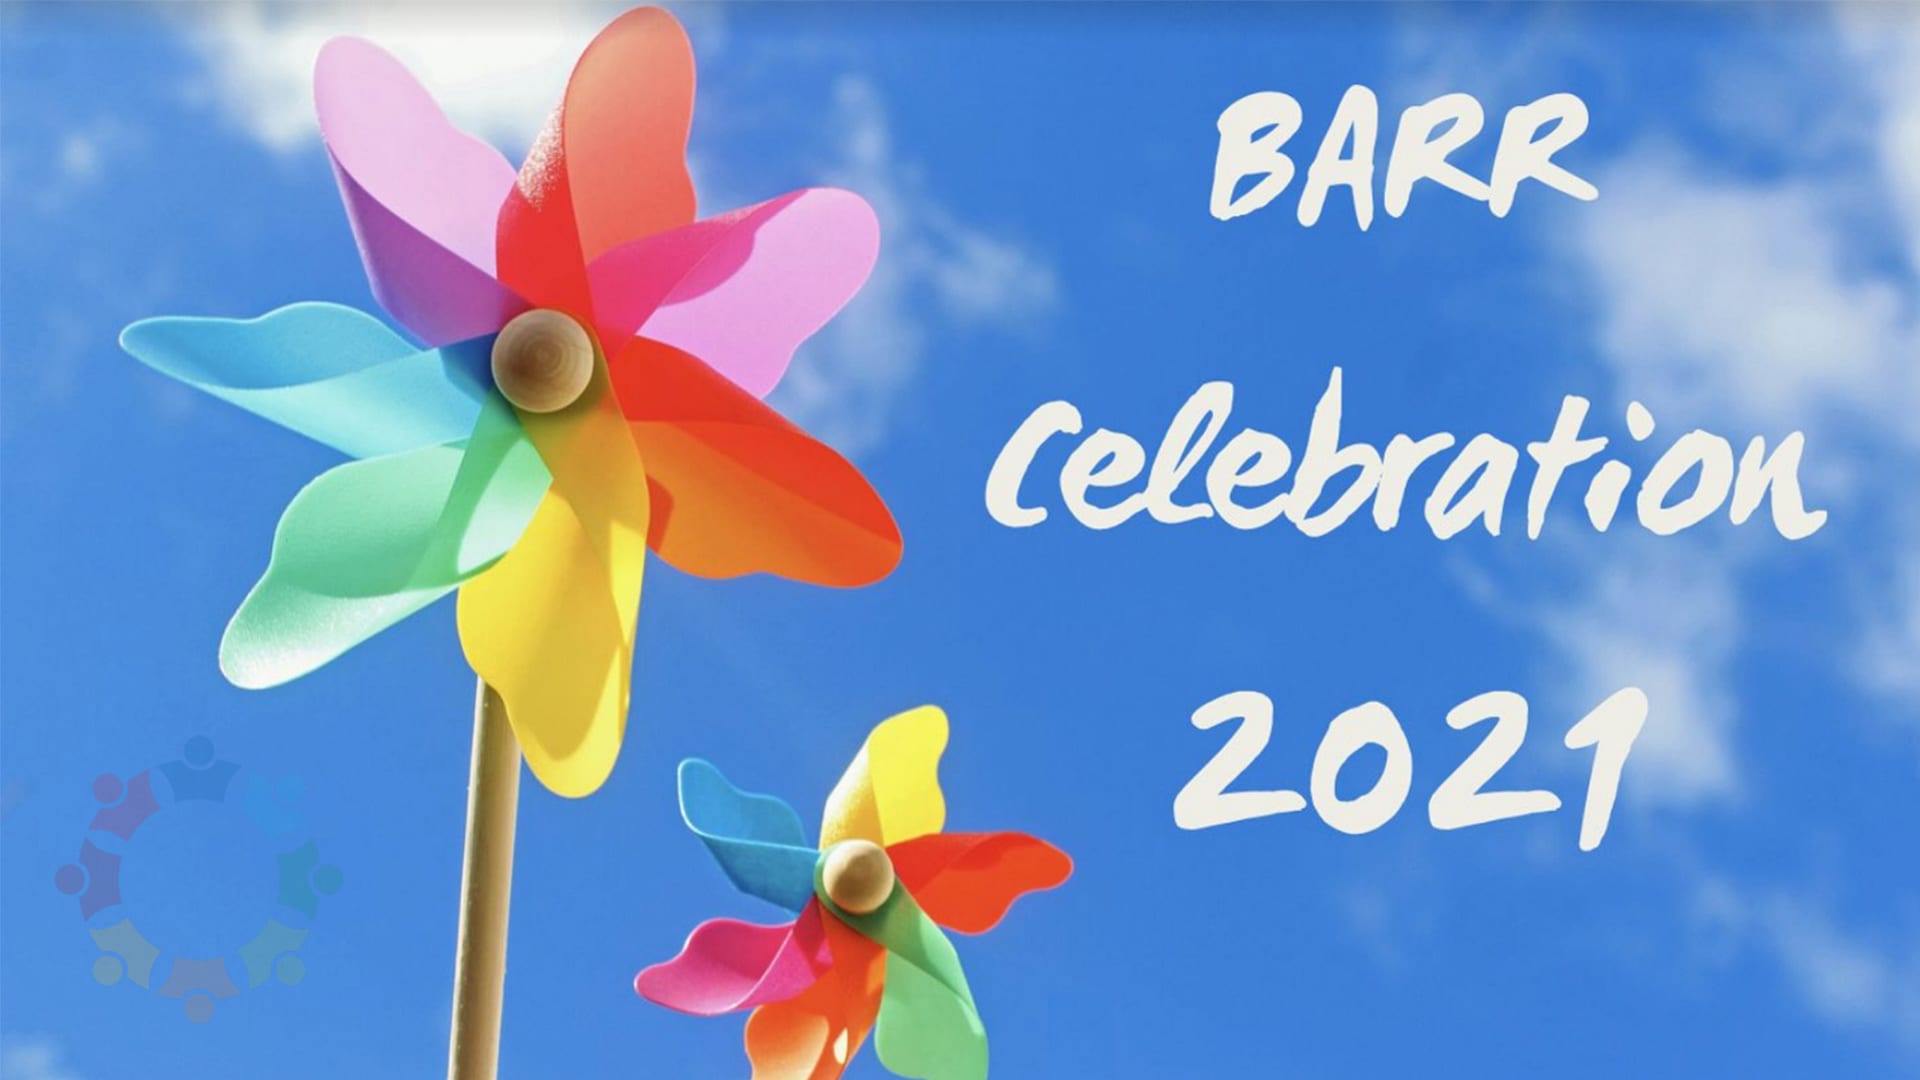 BARR Celebration 2021